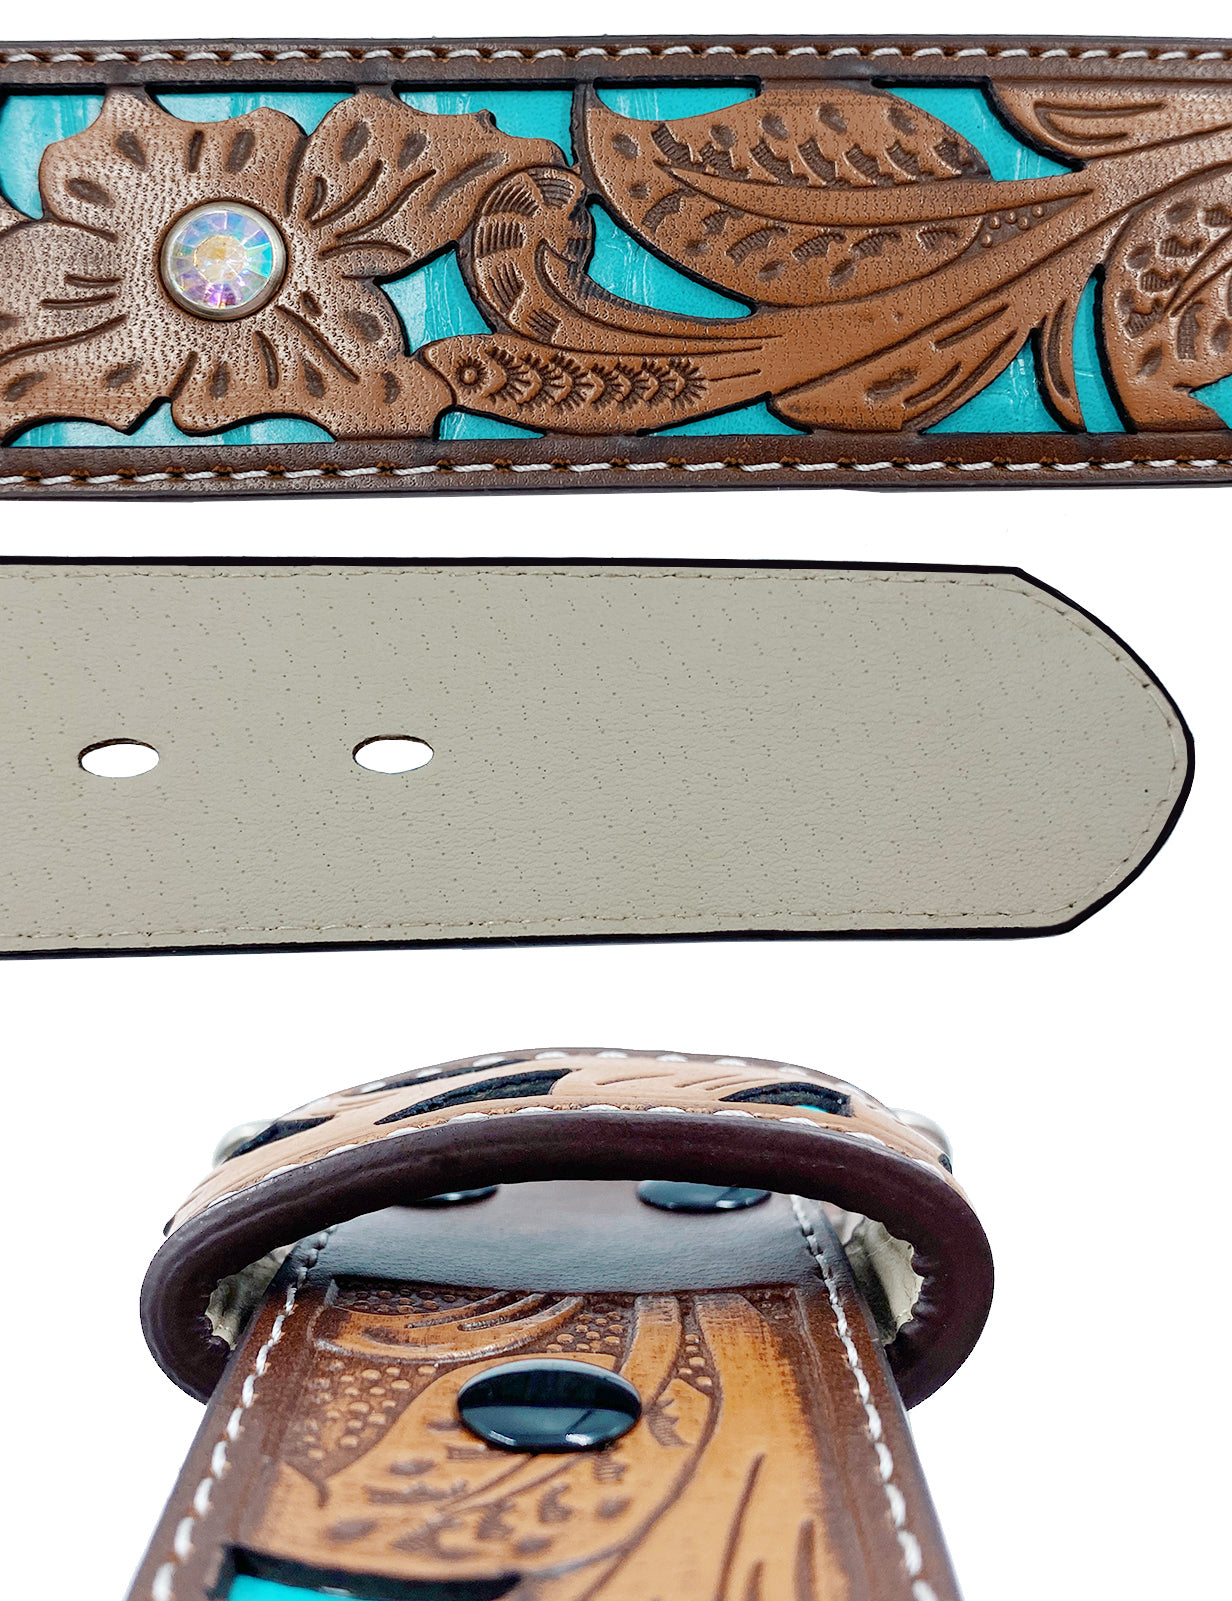 TOPACC Western Turquoise Belts - Three Cross Belt Buckle Copper/Bronze